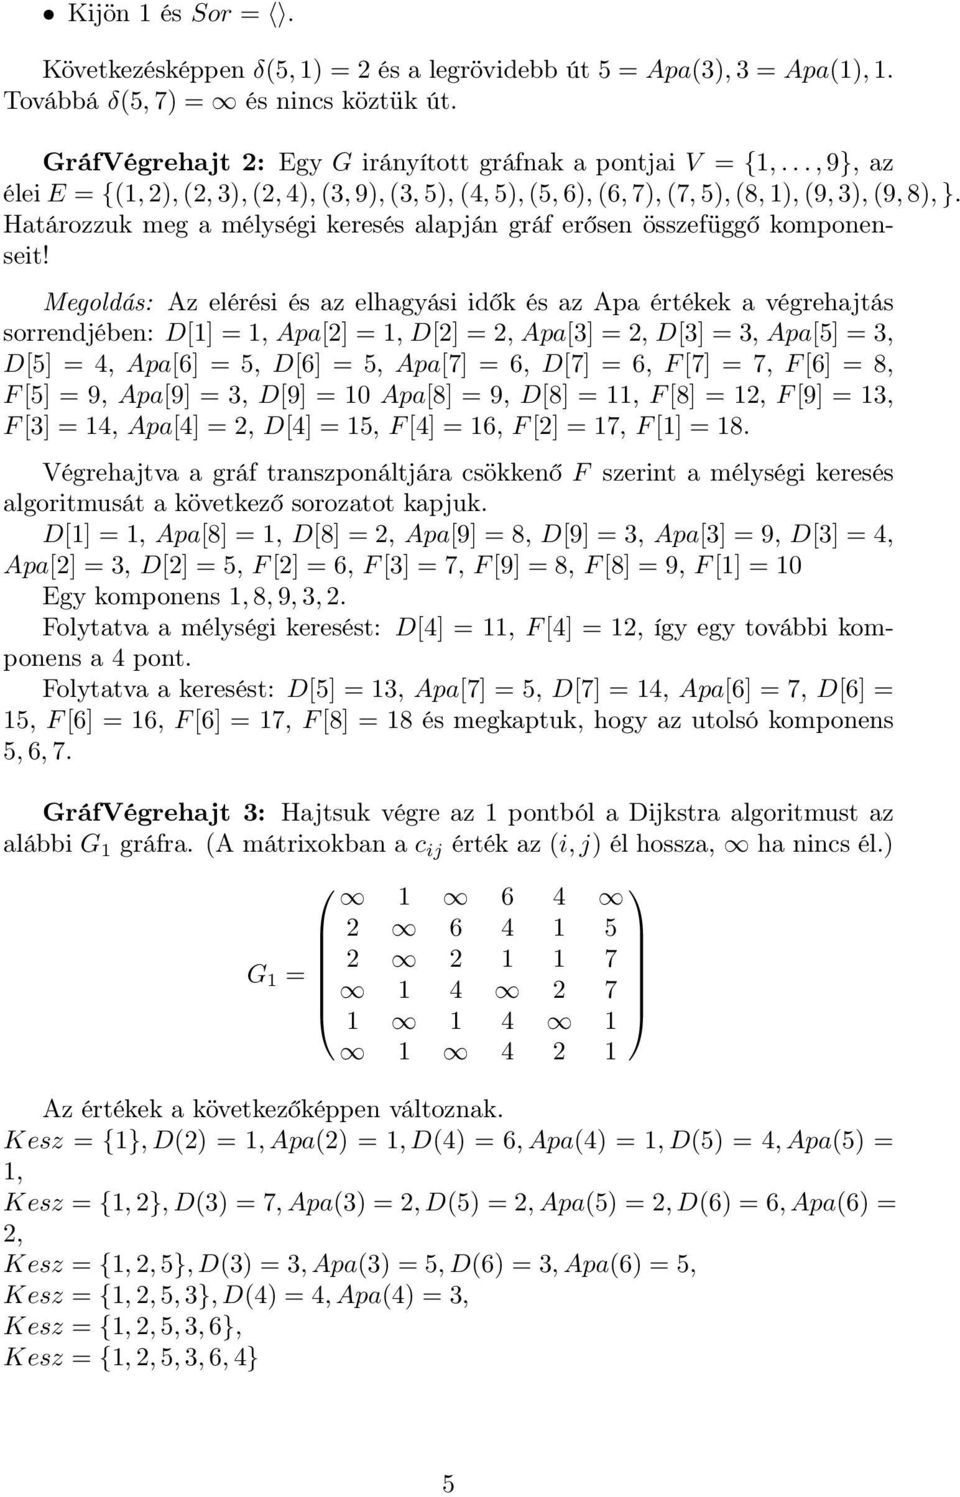 Megoldás: Az elérési és az elhagyási idők és az Apa értékek a végrehajtás sorrendjében: D[1] = 1, Apa[2] = 1, D[2] = 2, Apa[3] = 2, D[3] = 3, Apa[5] = 3, D[5] = 4, Apa[6] = 5, D[6] = 5, Apa[7] = 6,